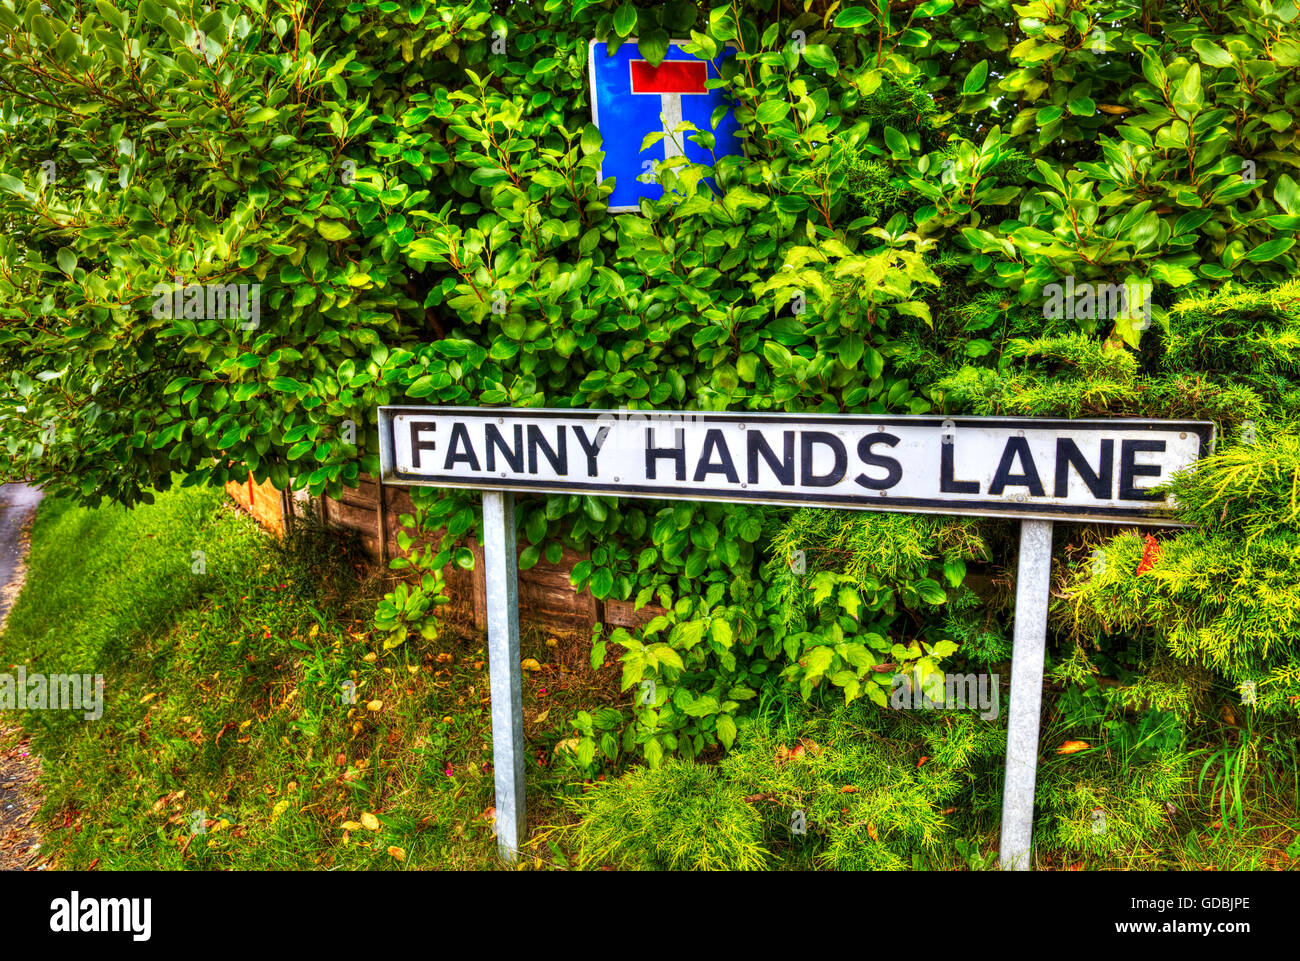 Amusant drôle signalisation routière UK signe étrange étrange insolite mains Fanny Ludford Lane Lincolnshire UK Angleterre routes noms mots Banque D'Images